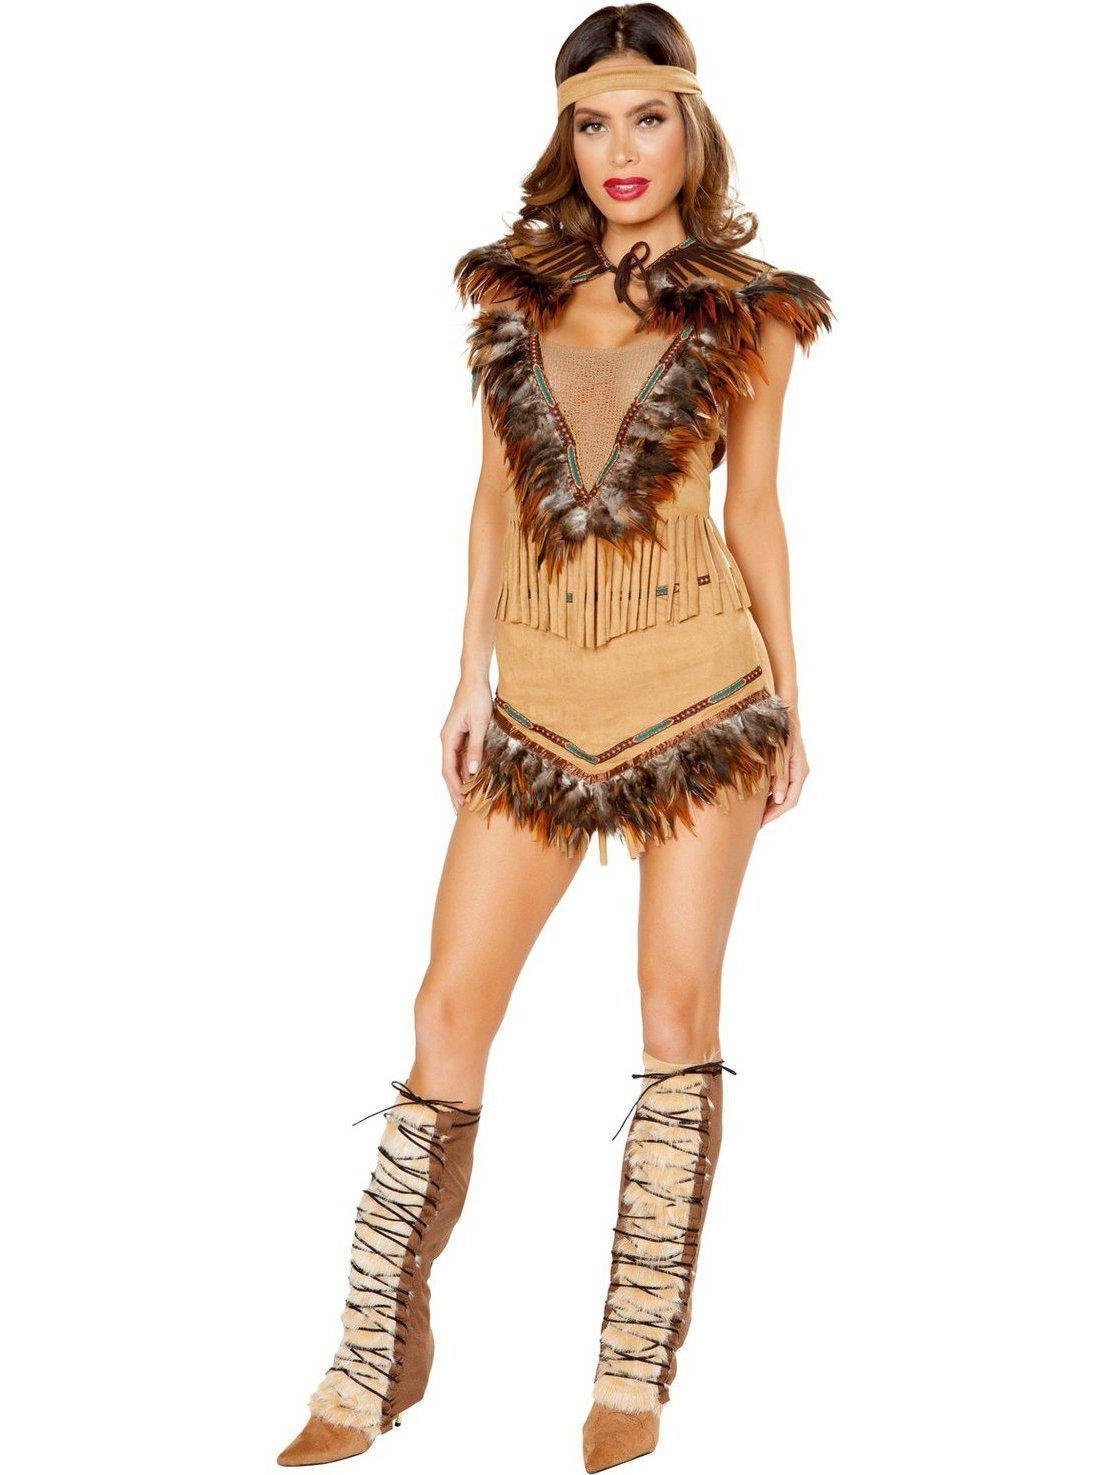 Roma RM-10117 3pc Cherokee inspirovaný dámský kostým Hottie Romský kostým